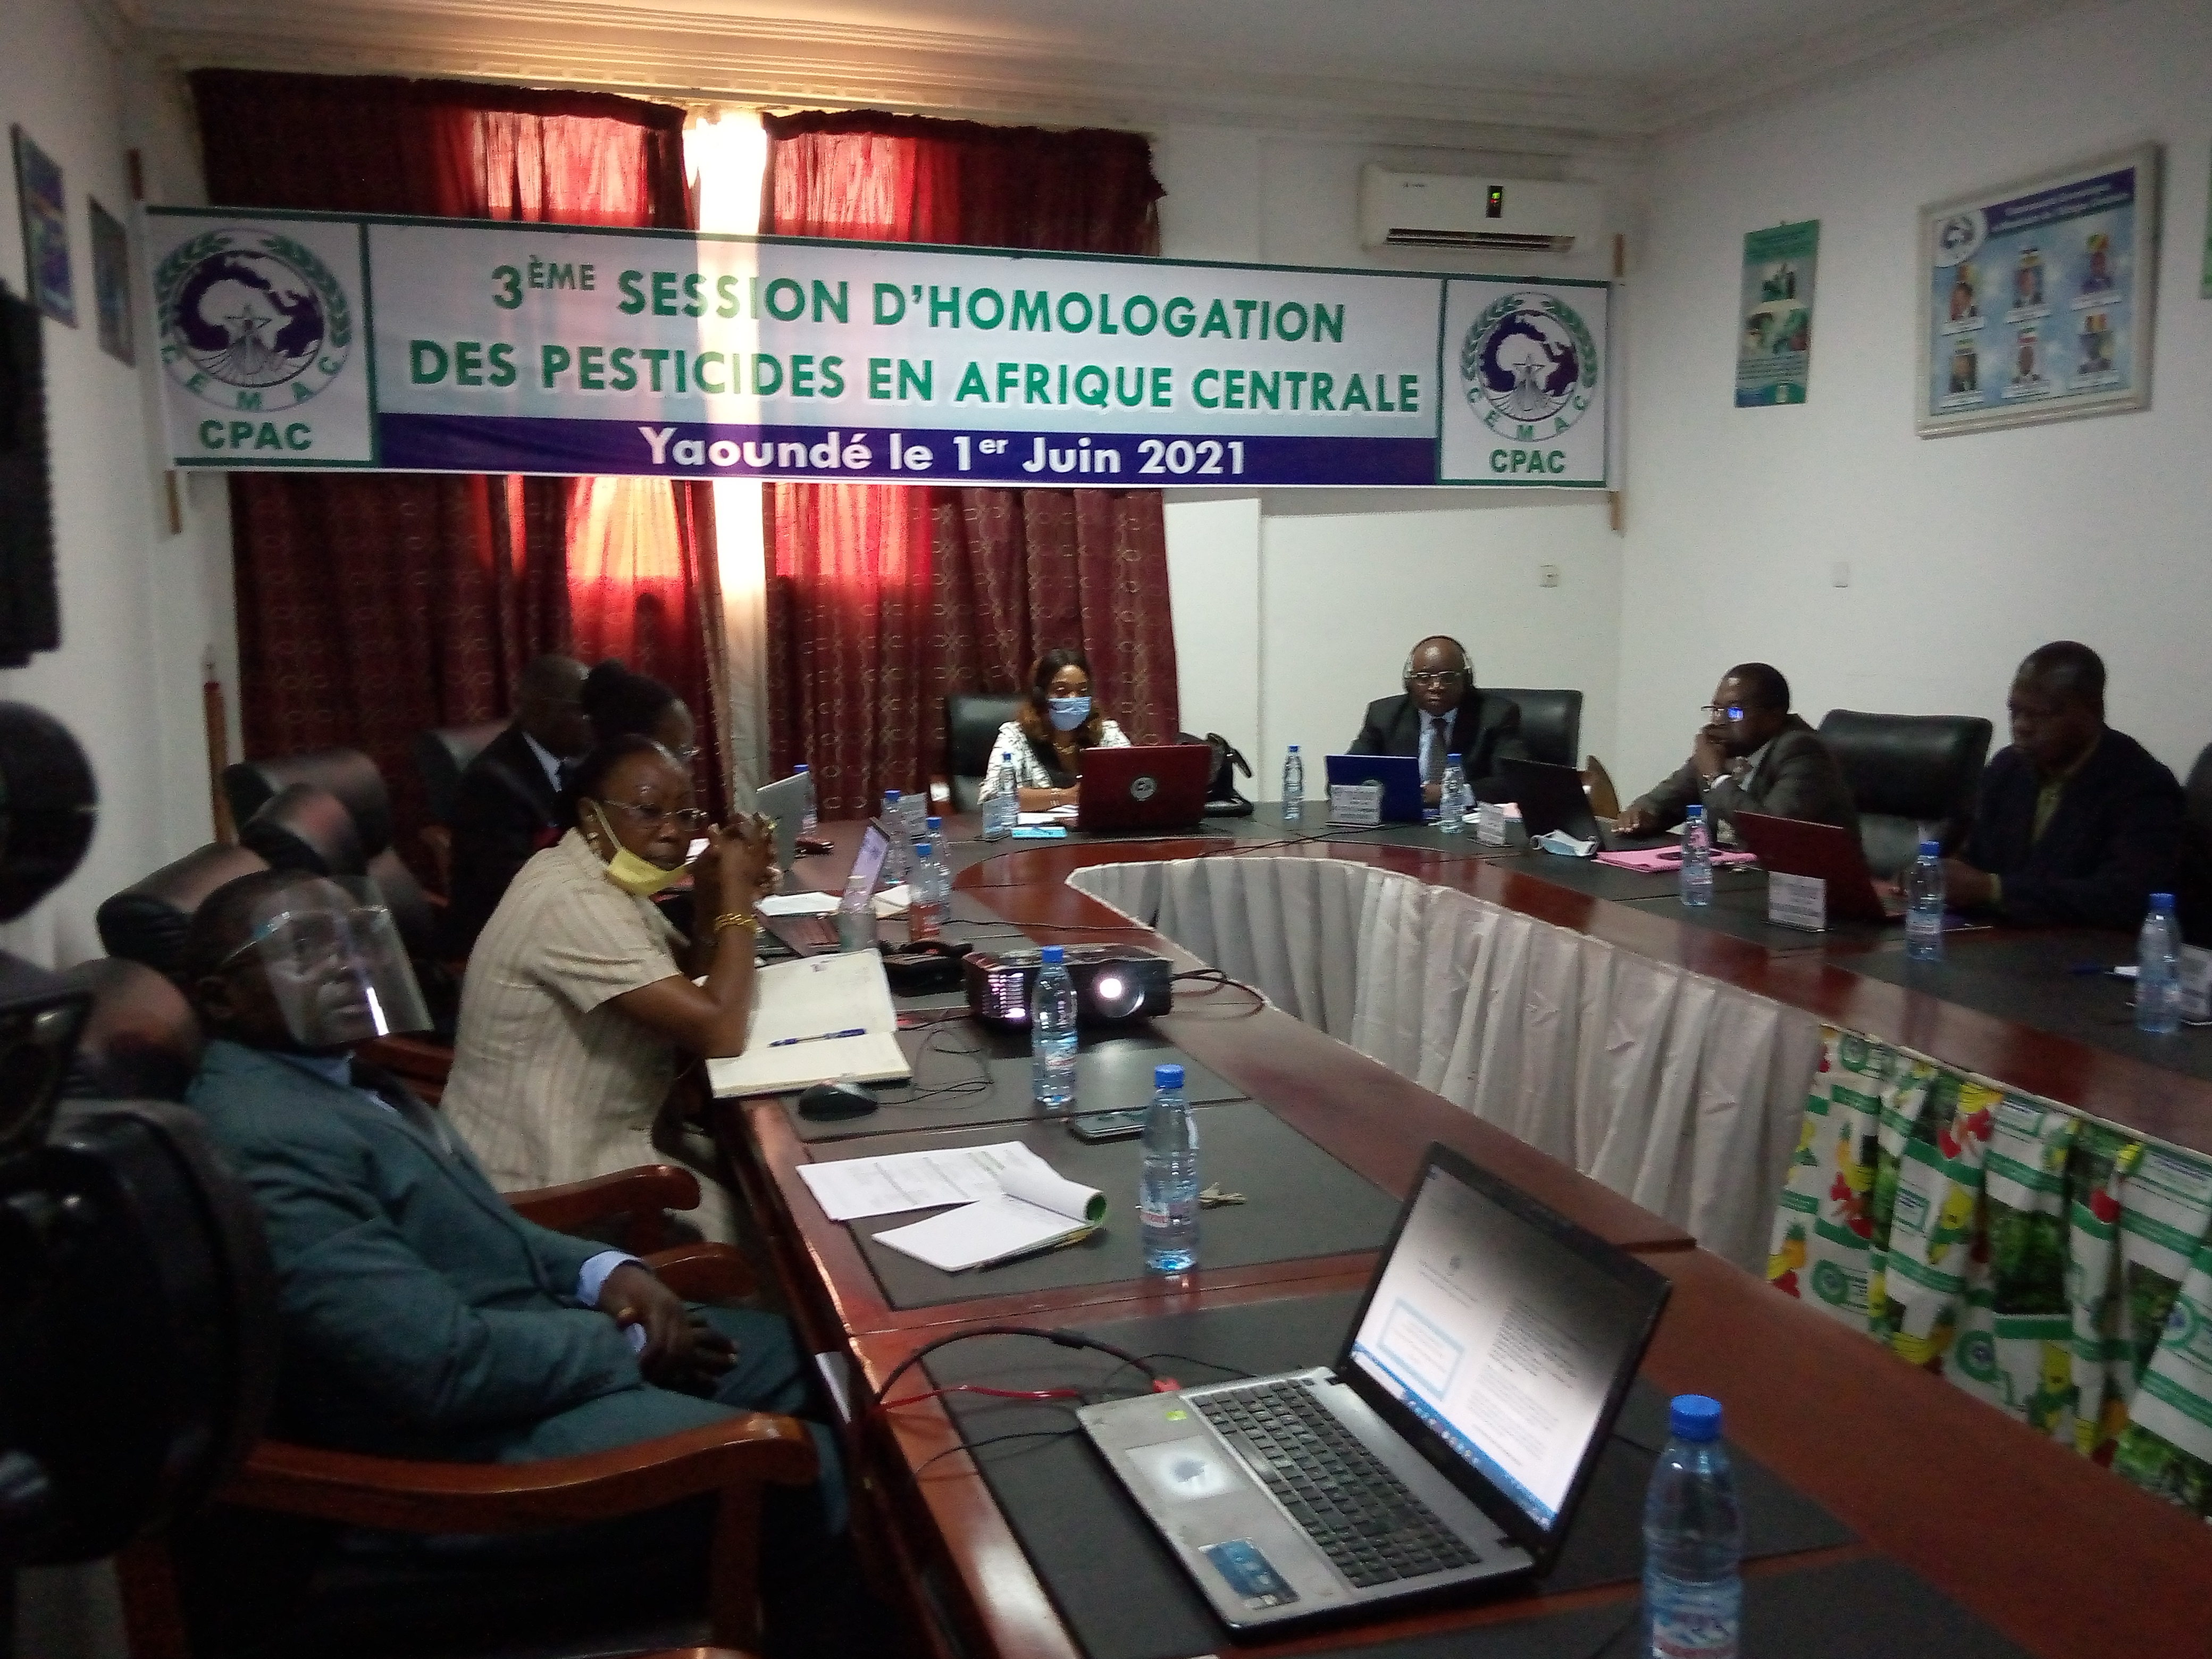 photo 3ème session d’homologation des pesticides en Afrique Centrale 